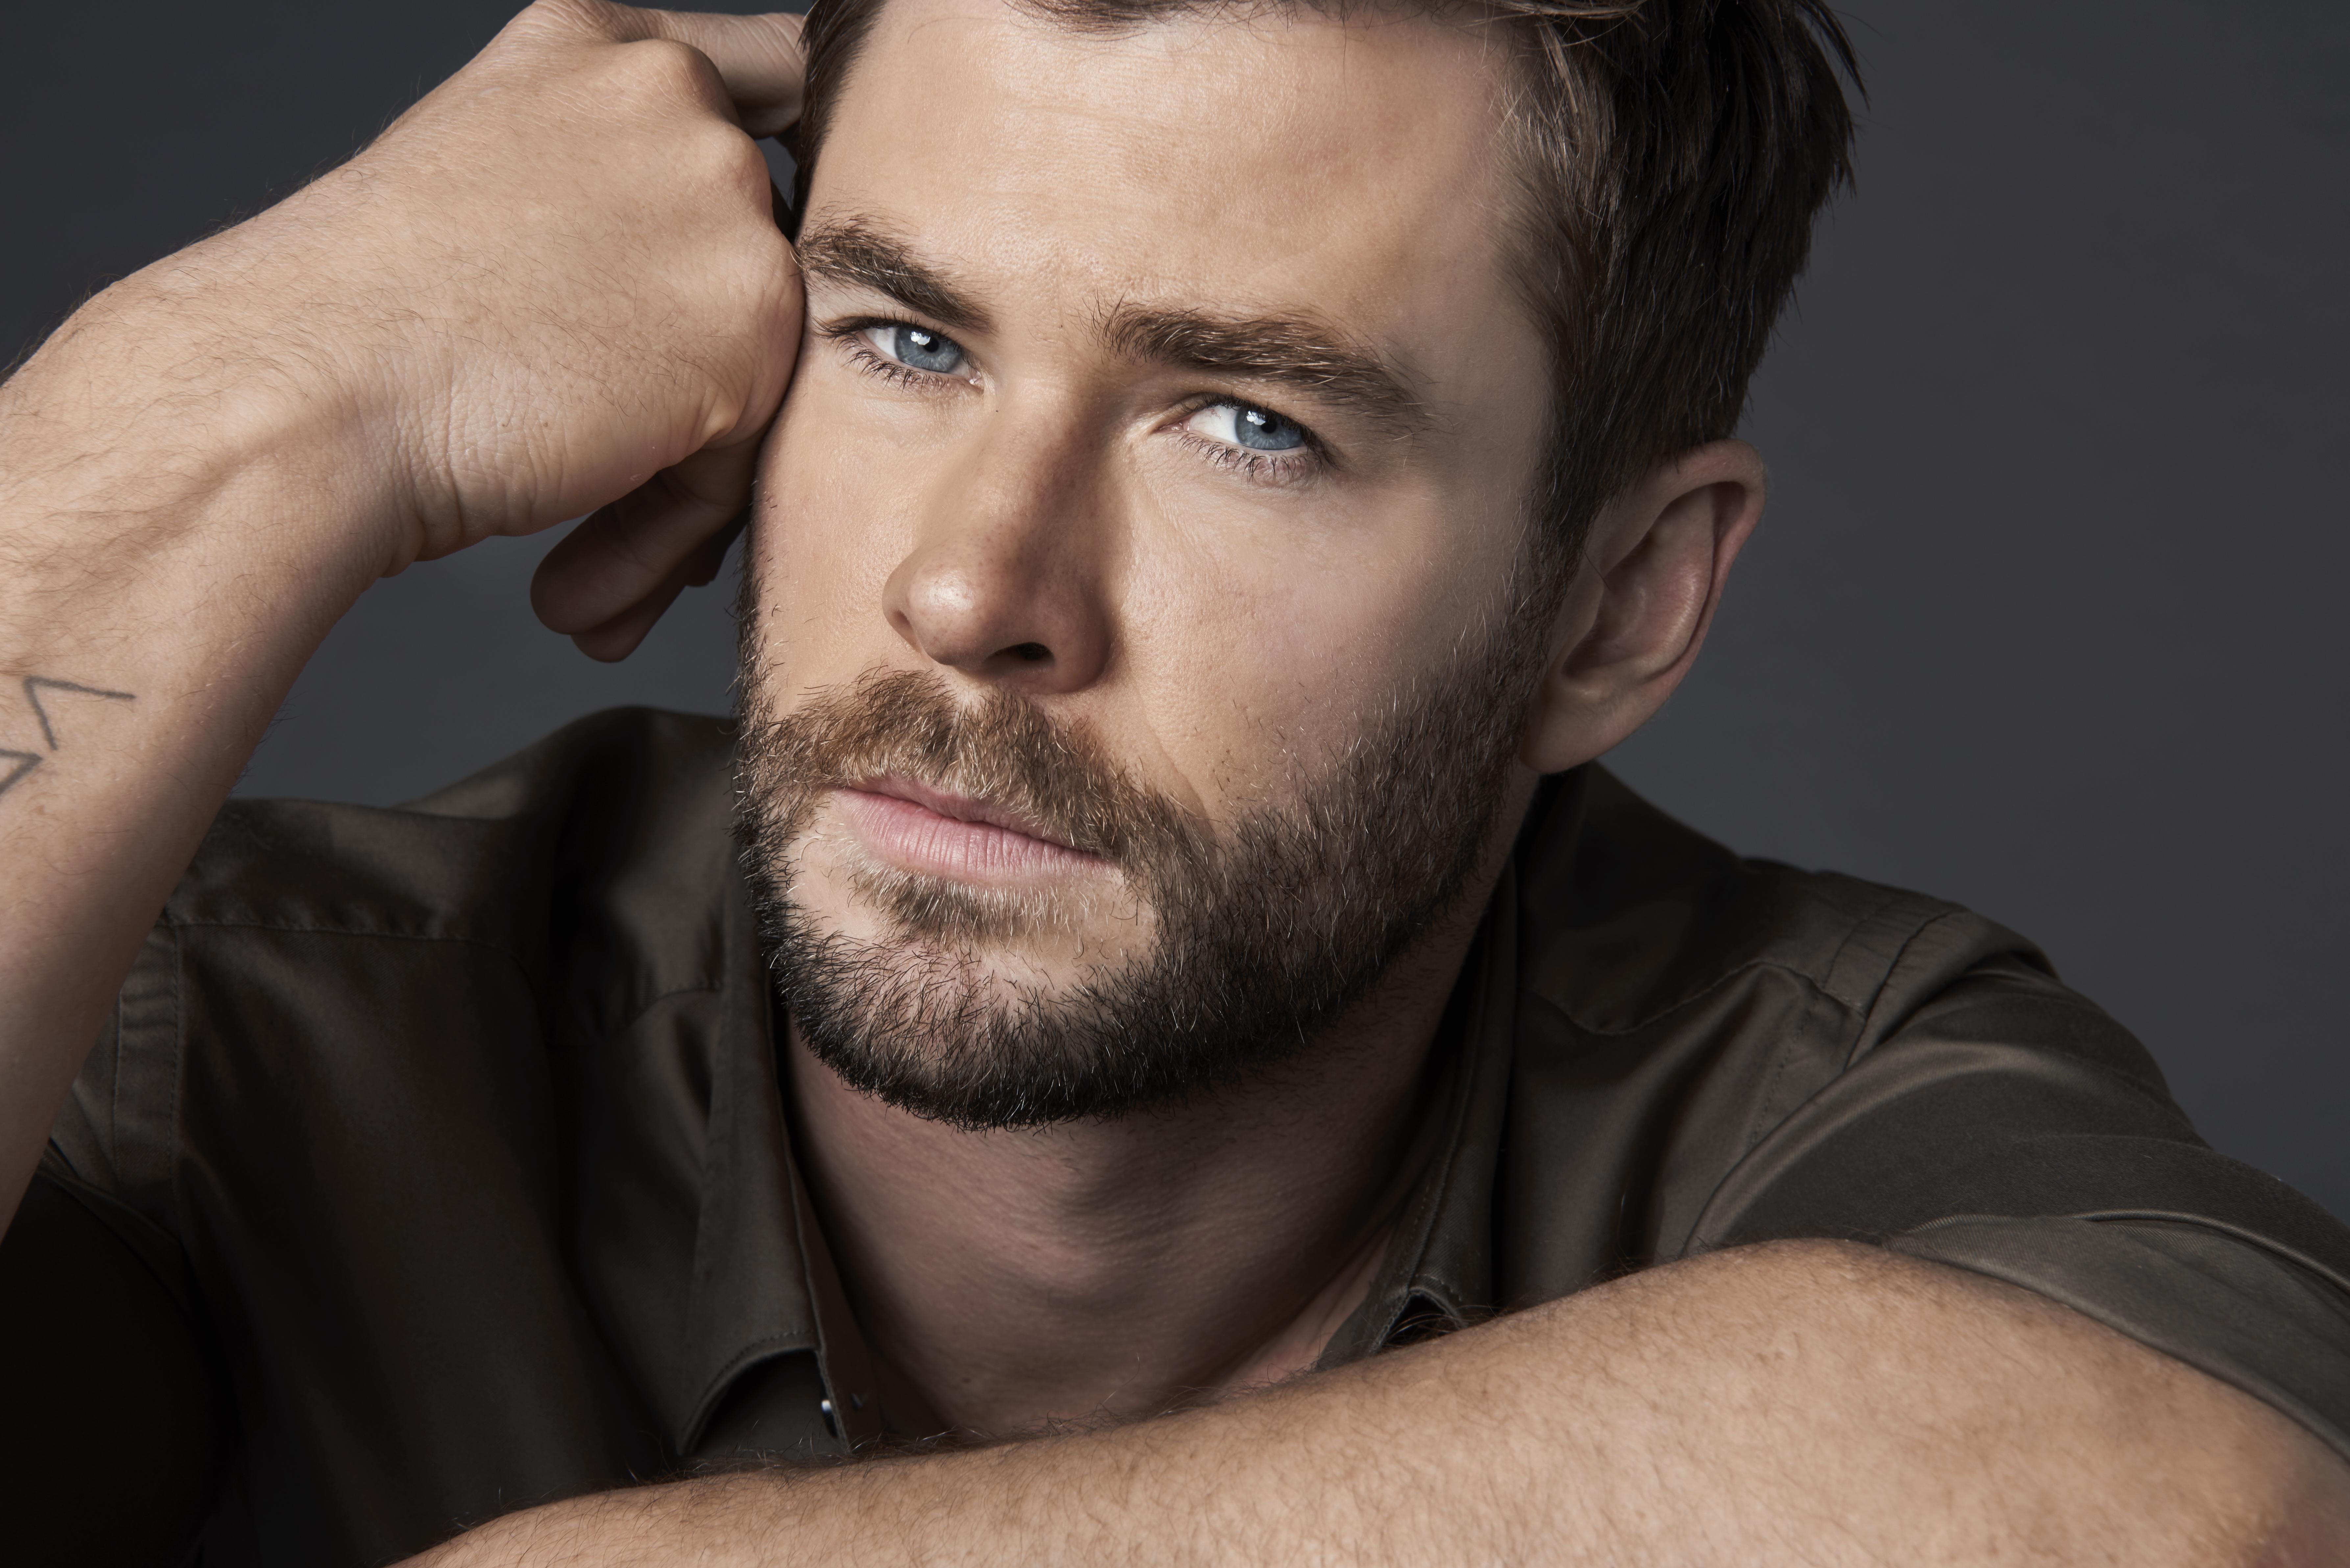 Chris Hemsworth 2019 8k, HD Celebrities, 4k Wallpaper, Image